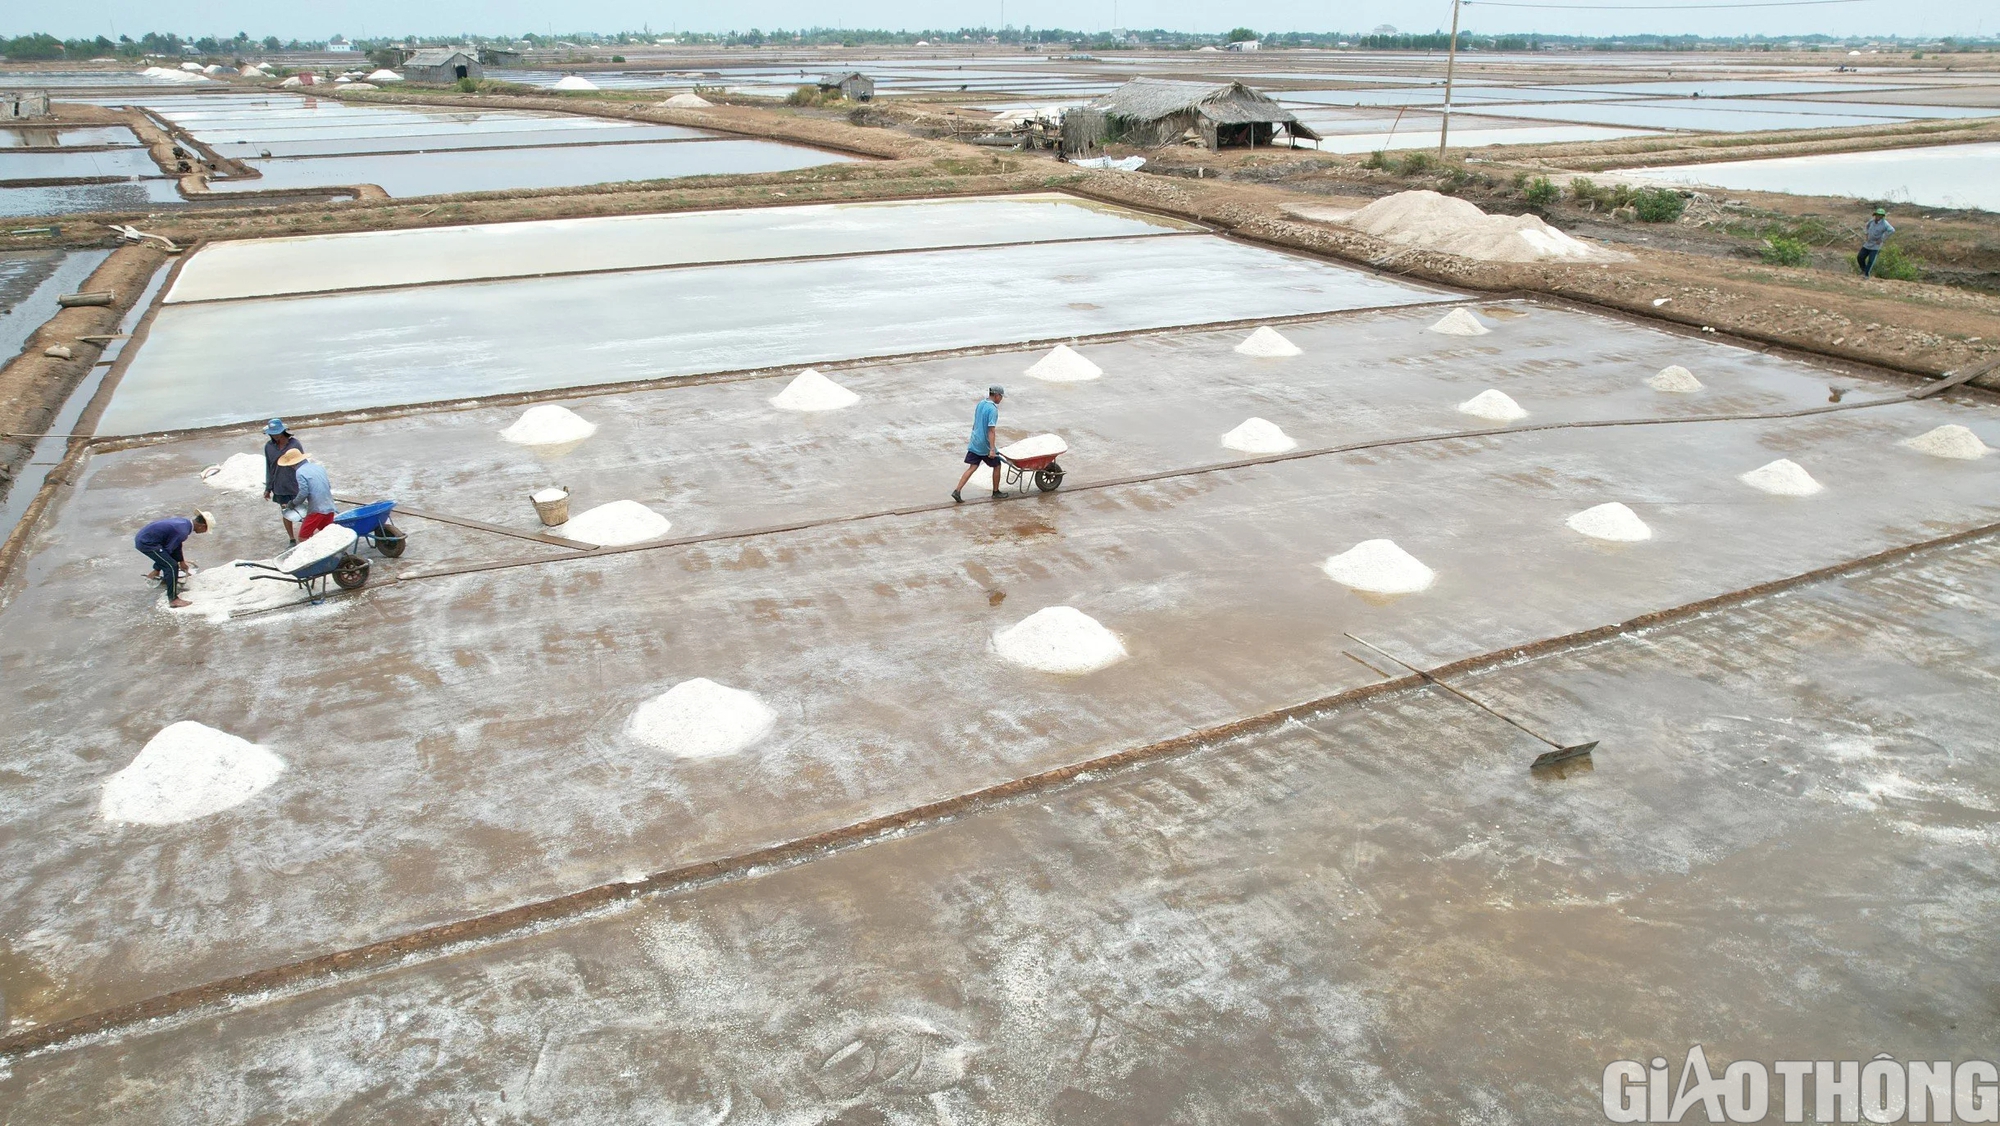 Diêm dân Bạc Liêu khấp khởi hy vọng nghề làm muối phát triển từ 100 tỷ đồng hỗ trợ- Ảnh 1.